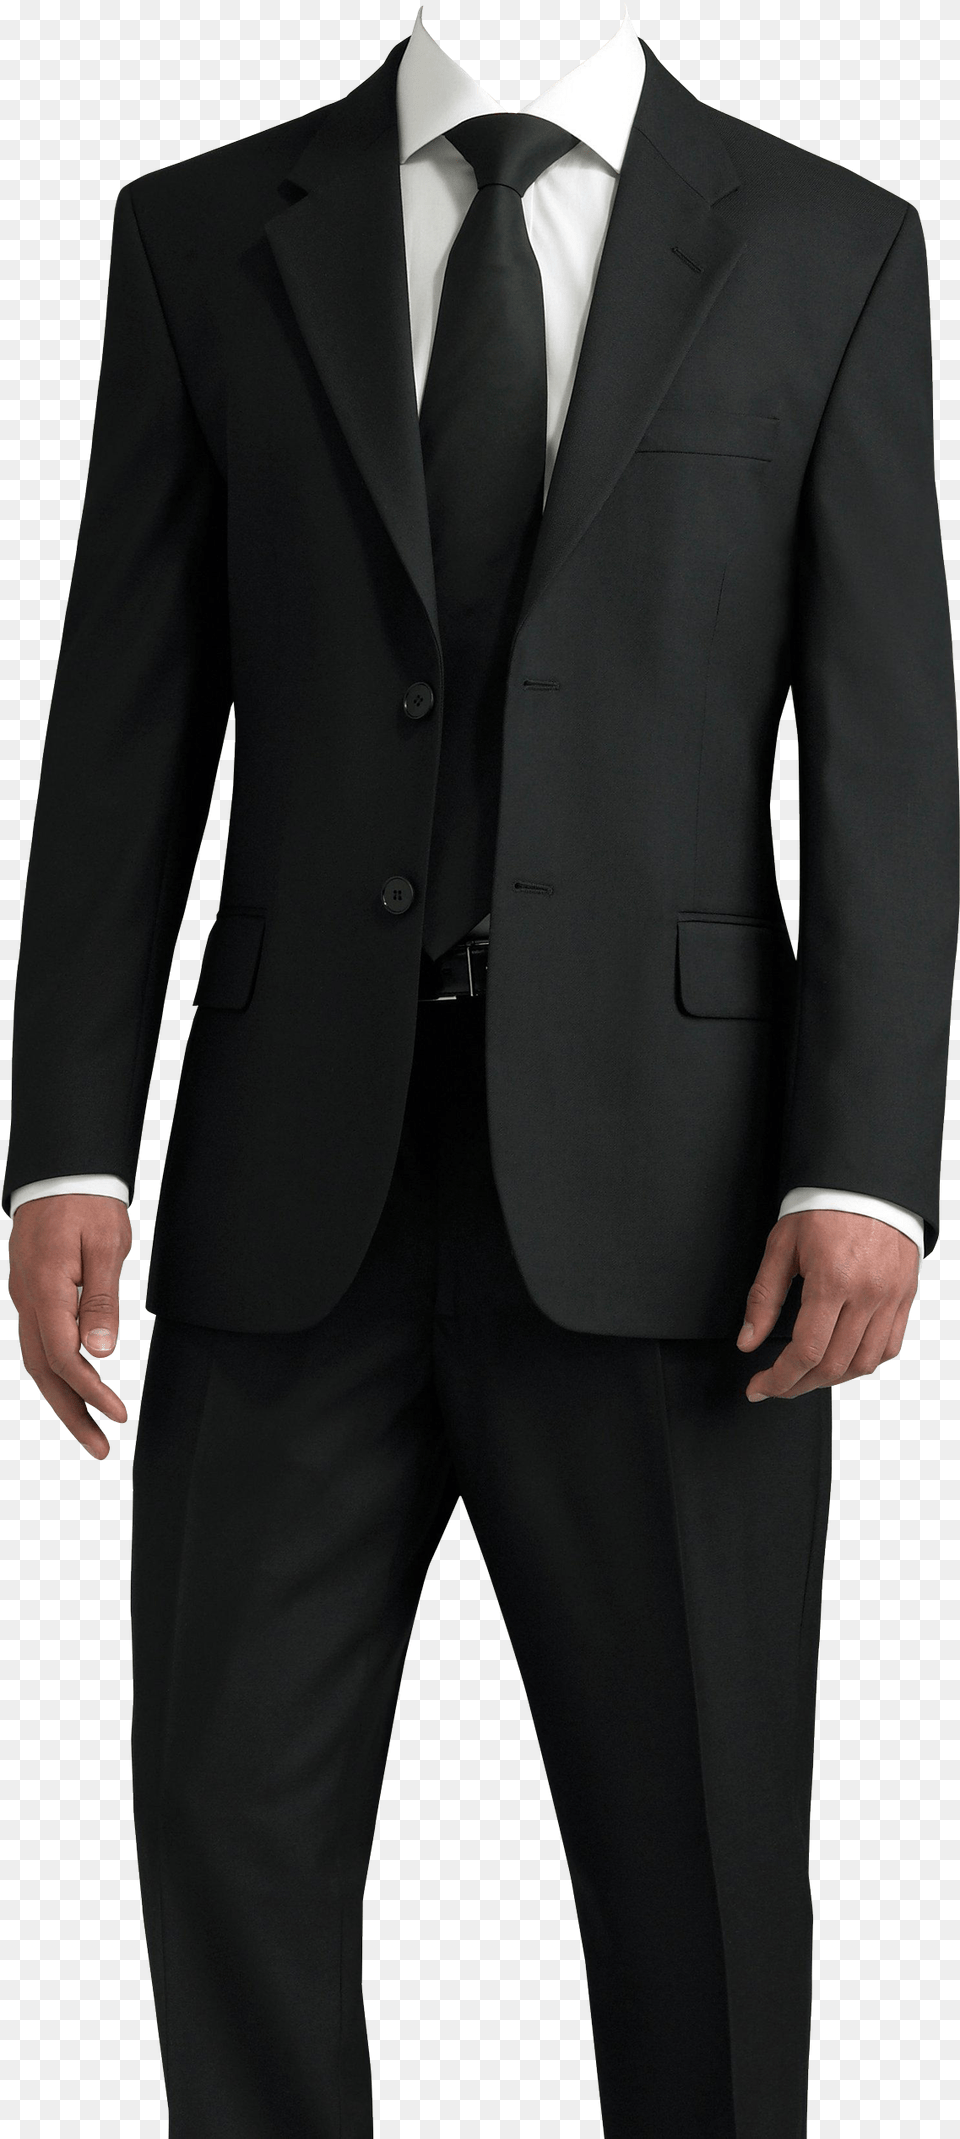 Images Pngpix Transparent Image Suit, Clothing, Formal Wear, Tuxedo, Coat Png